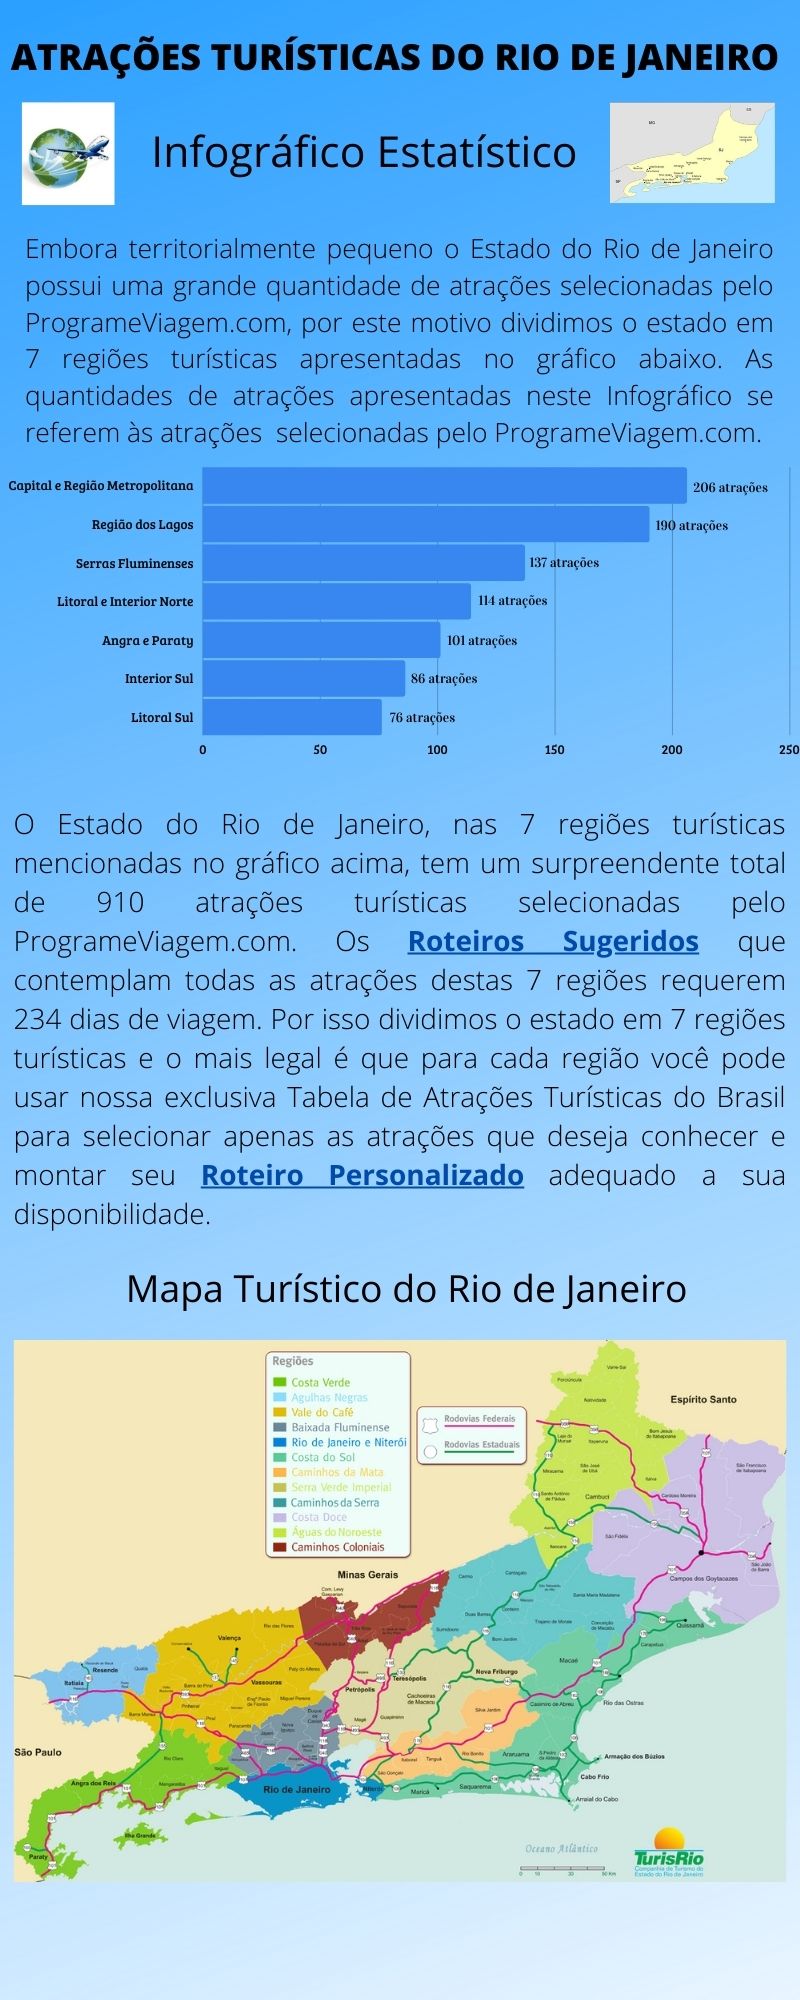 Infográfico Atrações Turísticas do Rio de Janeiro 1